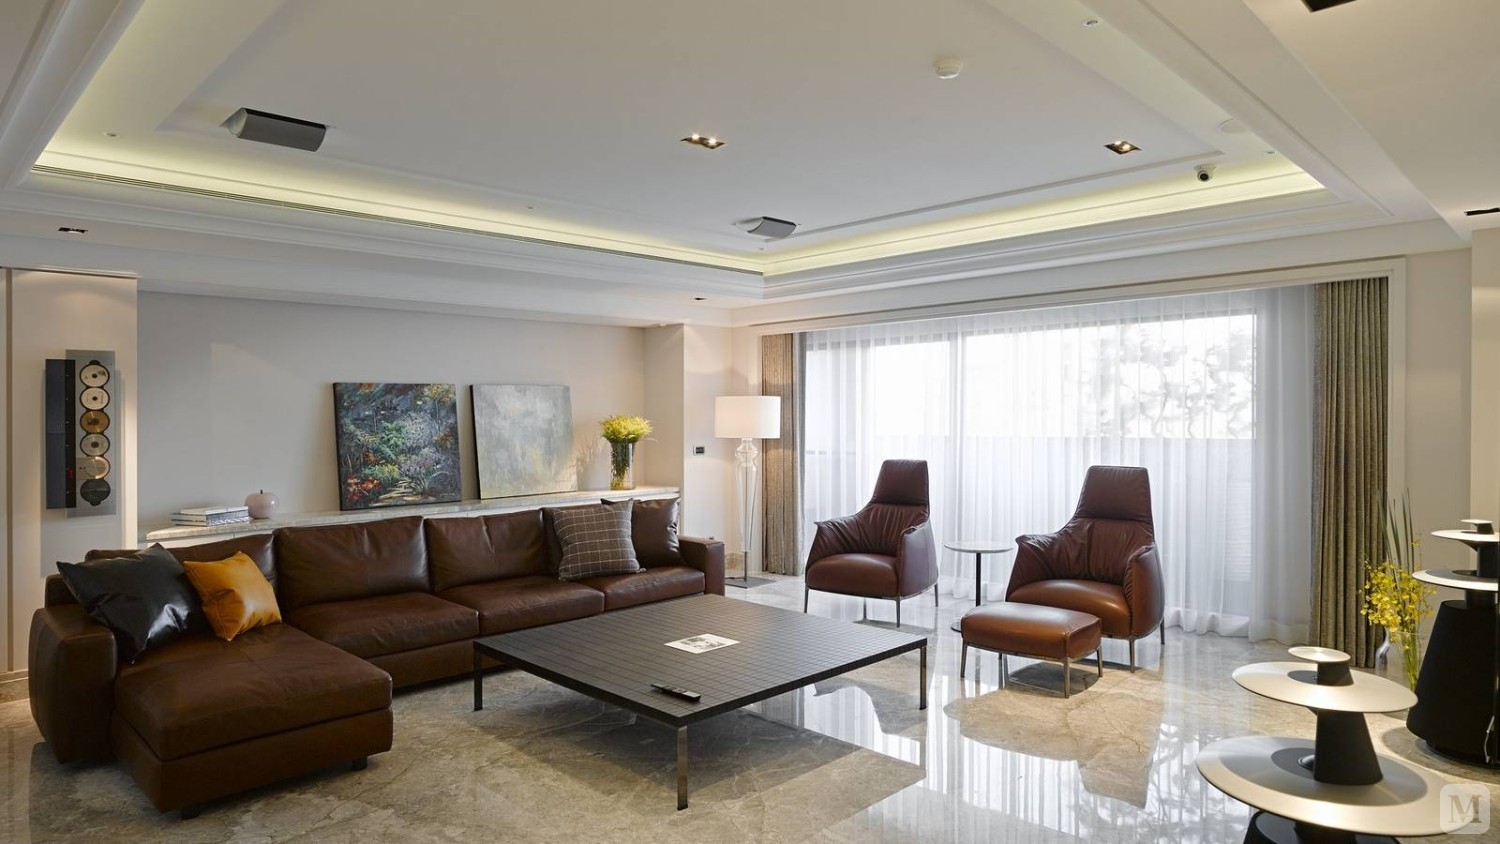 港式风格客厅布置宜简洁自然，色彩和谐，暖色沙发将客厅布置为开放式，电视墙个性的线条设计凸现客厅布置强调的时尚感。